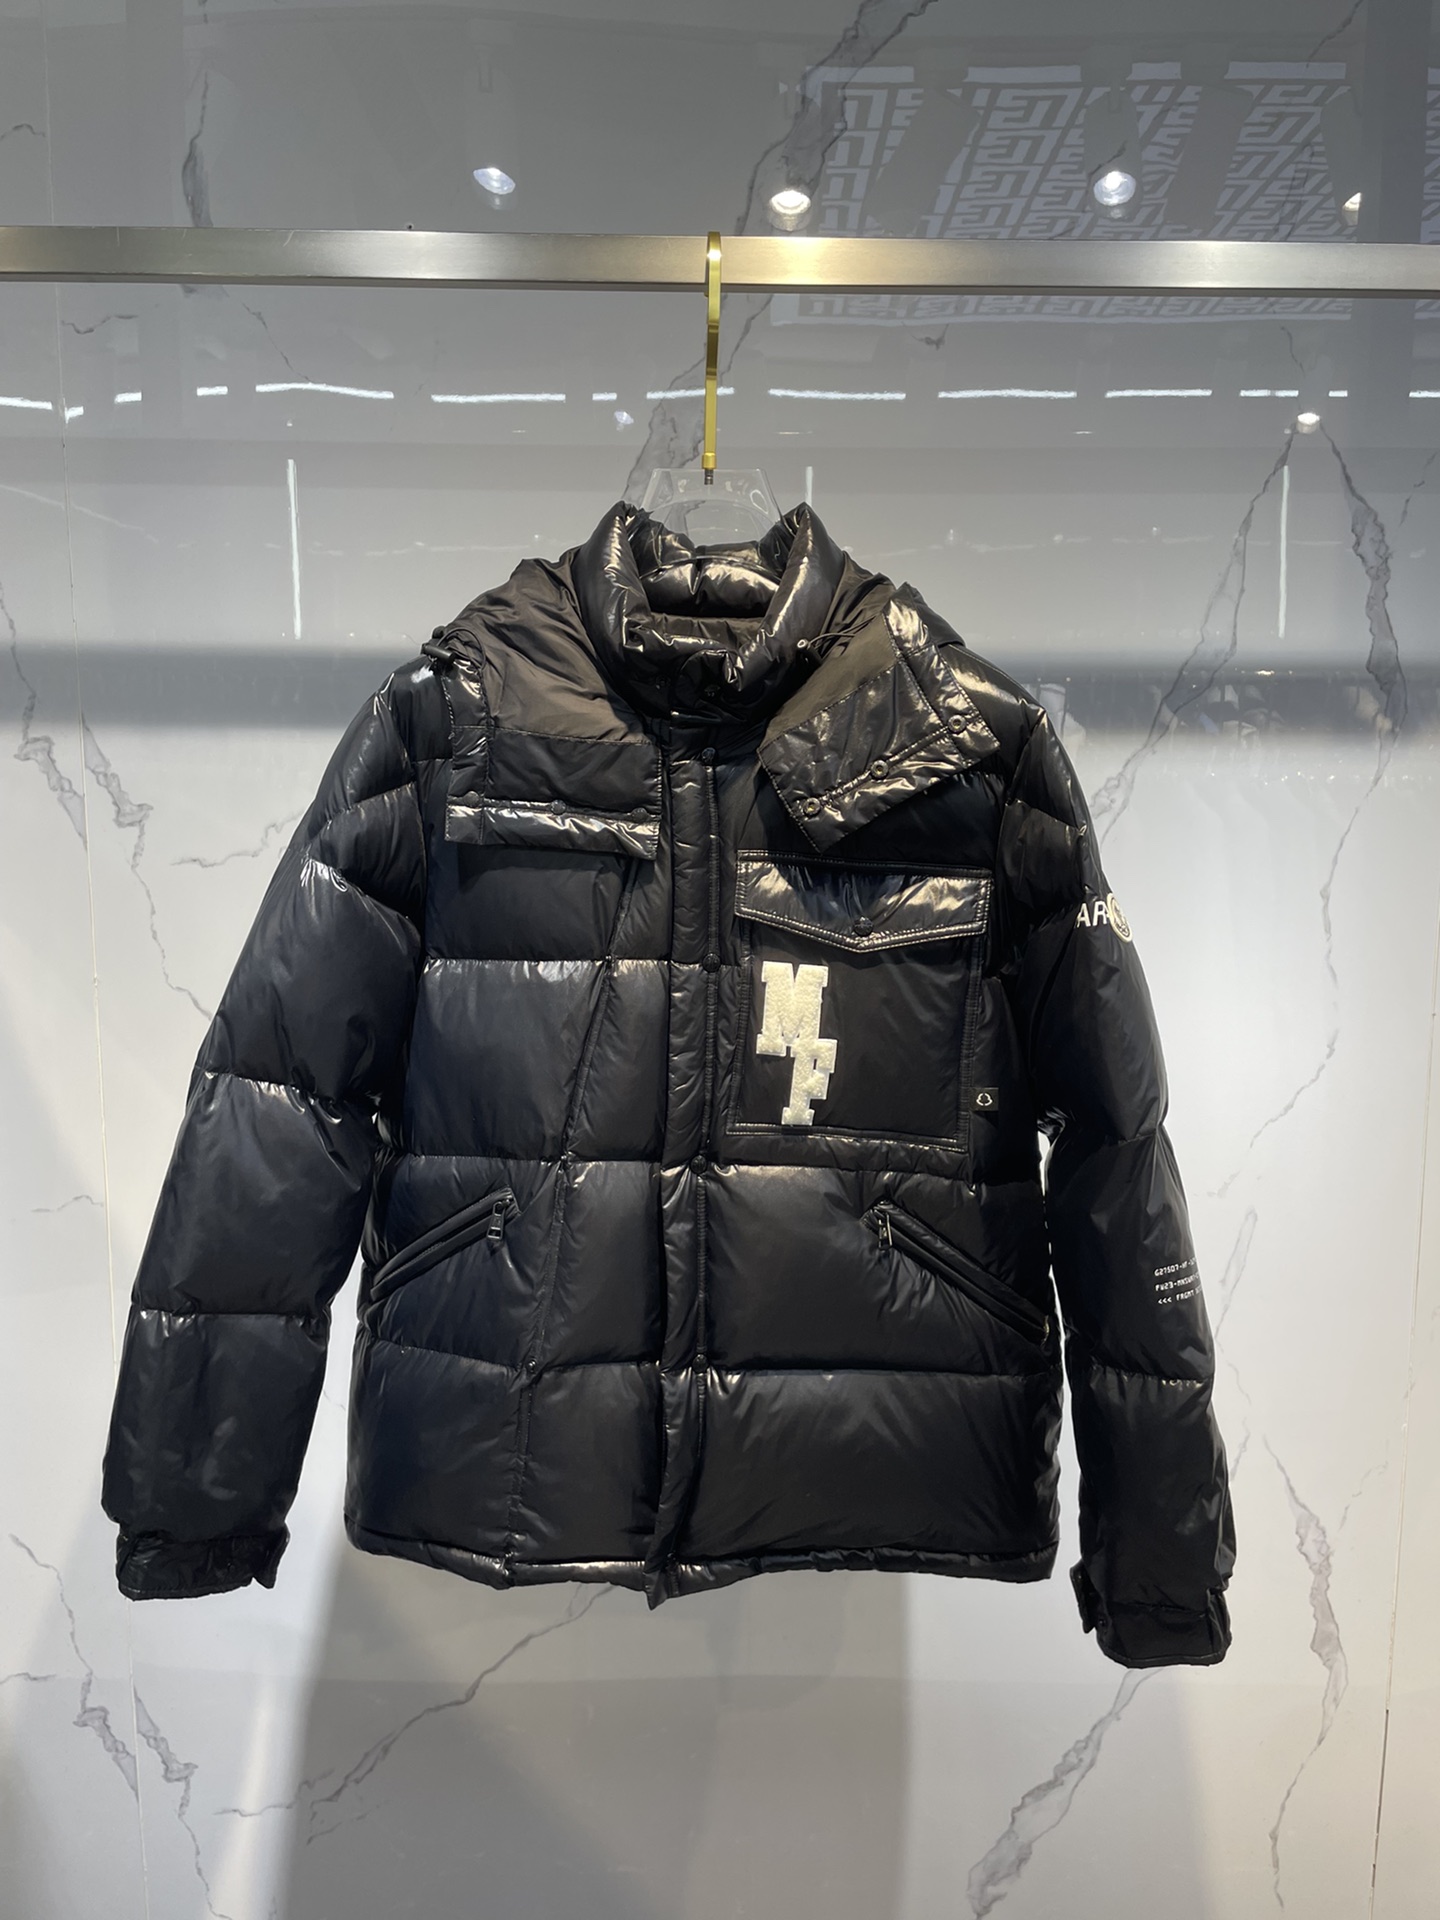 Coco Sneakers Moncler Genius - 7 Moncler FRGMT Hiroshi Fujiwara - Anthemium hooded short down jacket black